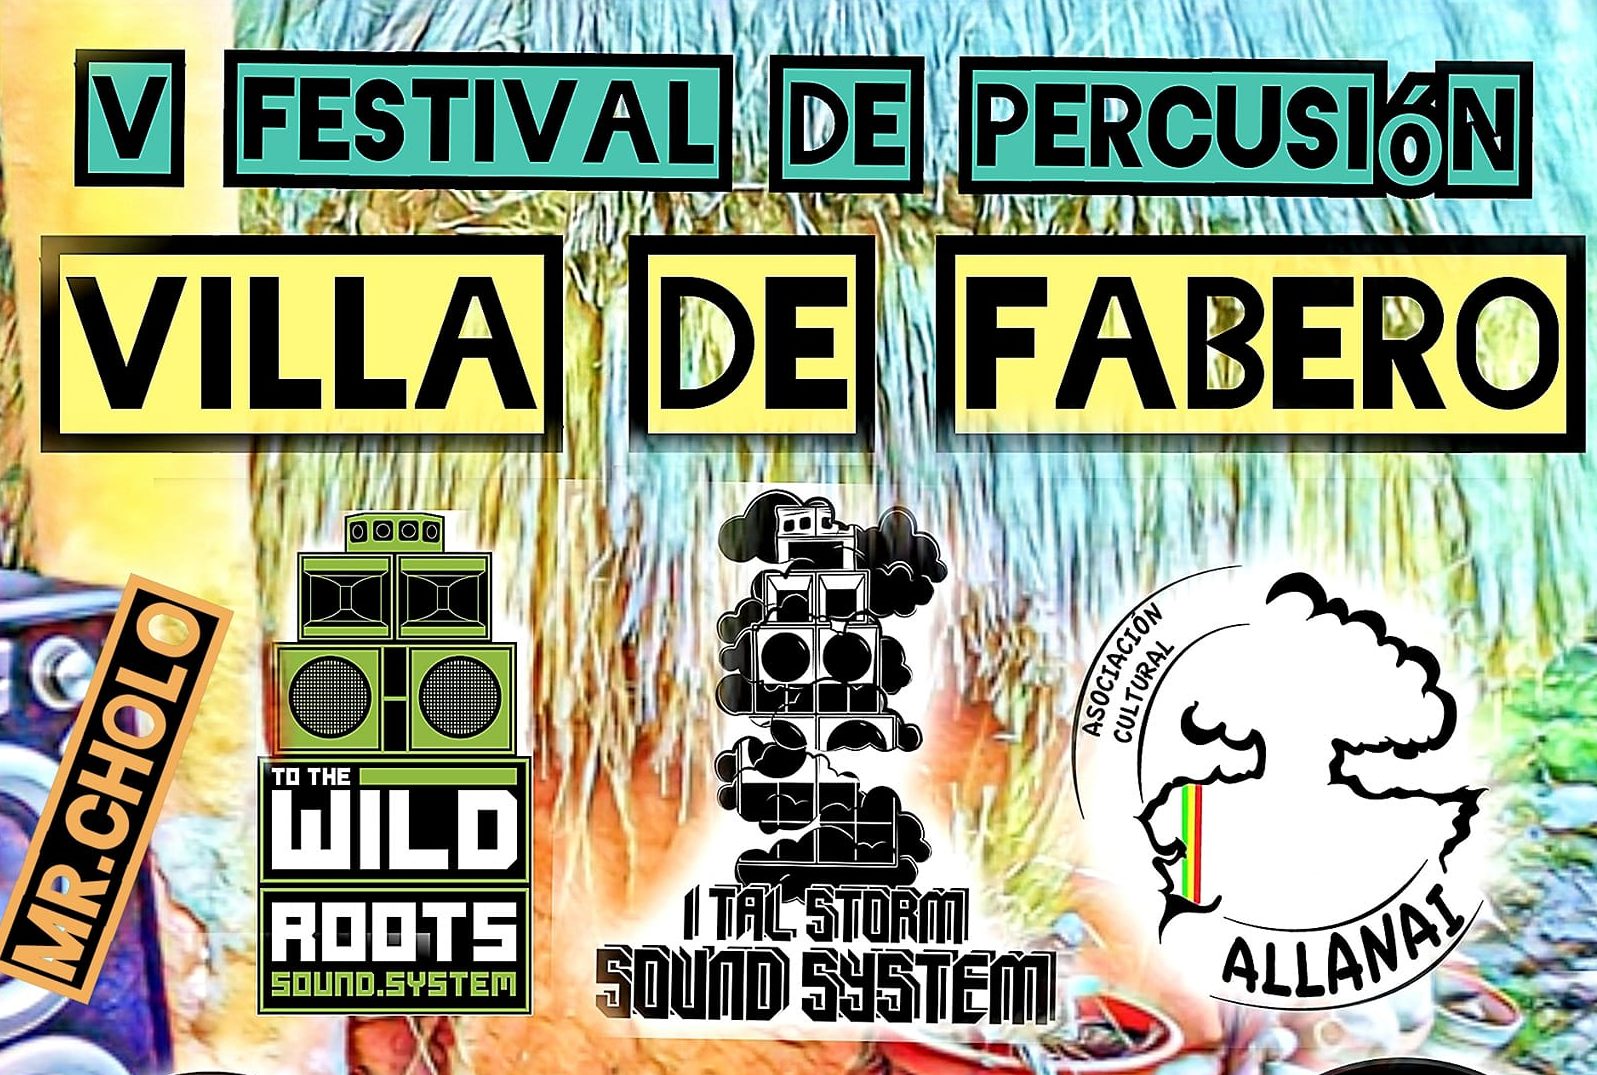 V Festival de Percusión Villa de Fabero 1